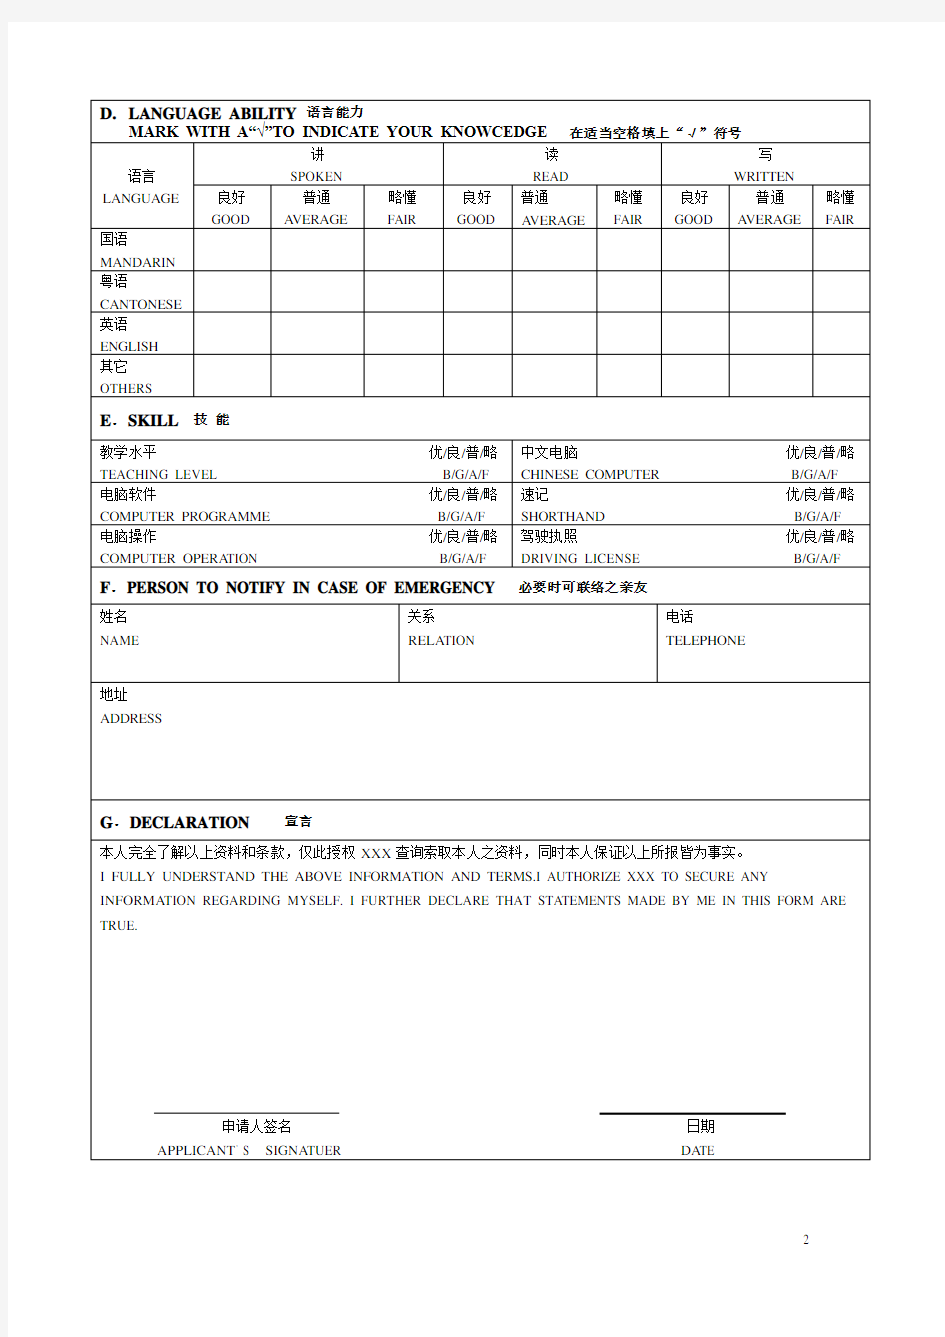 员工入职登记表-个人档案(中英文版完美A4打印)